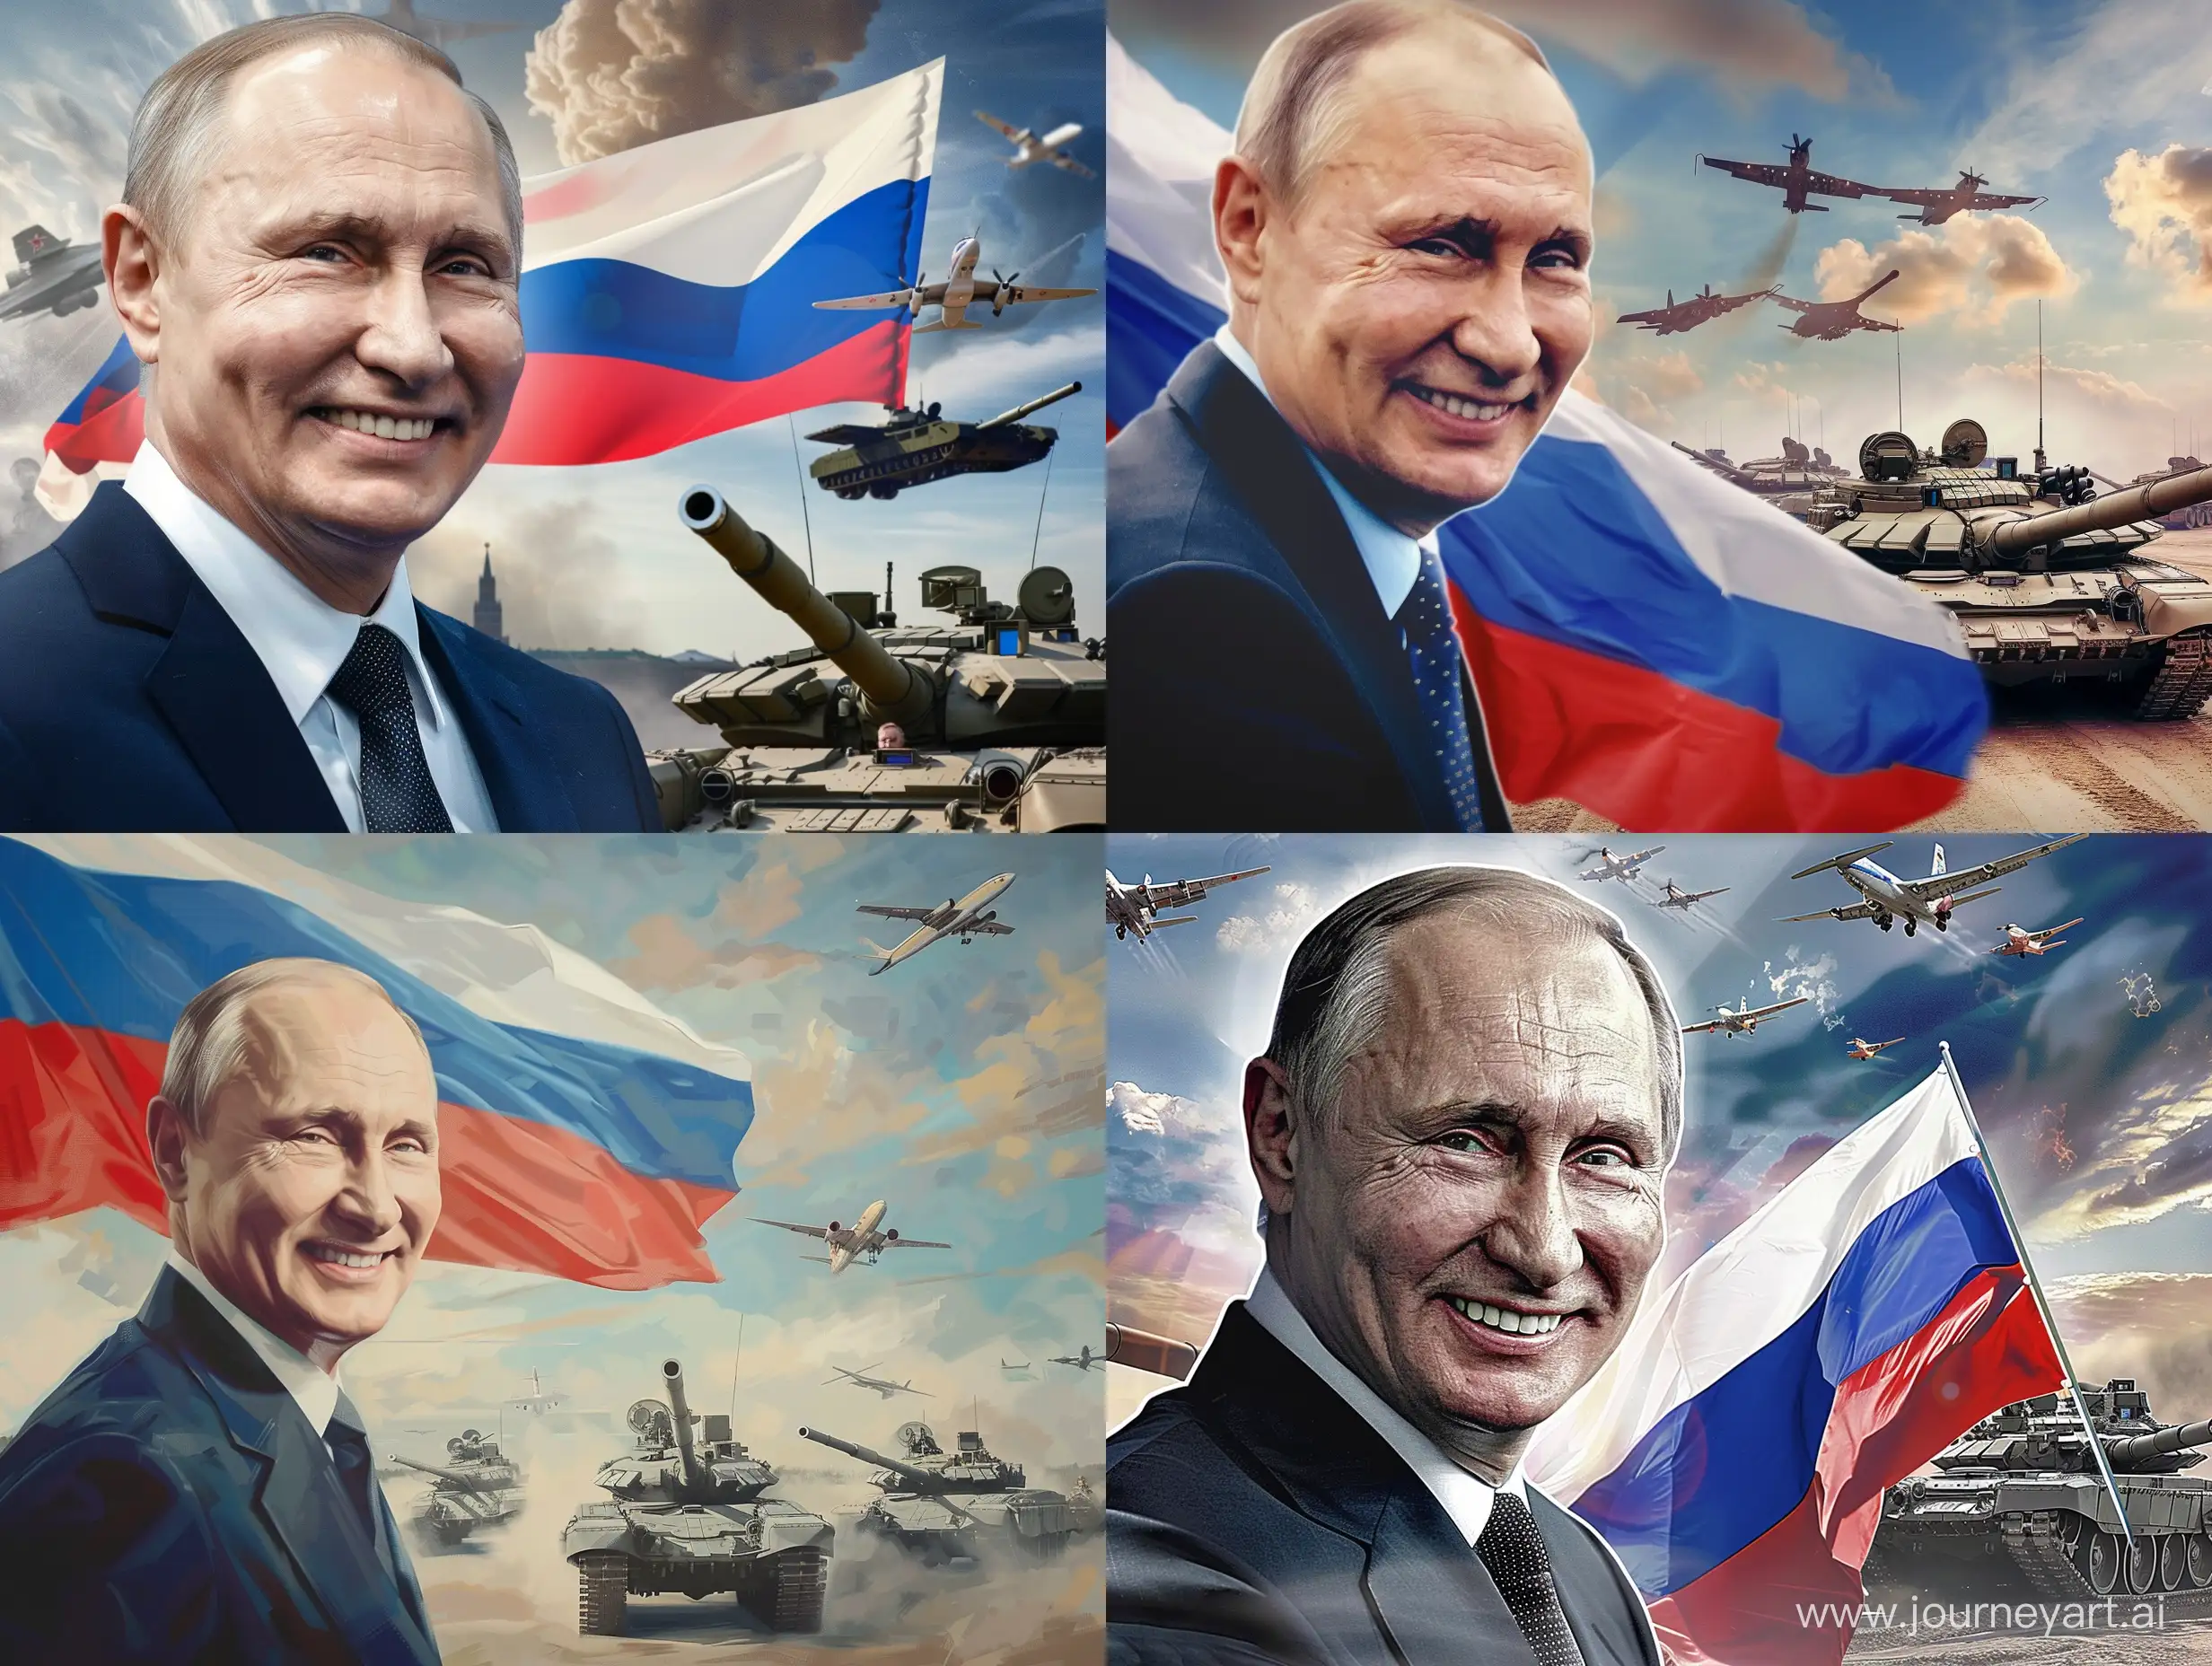 Постер, Владимир Путин улыбается, Российский флаг, на фоне едут танки, РСЗО, в небе летают самолеты